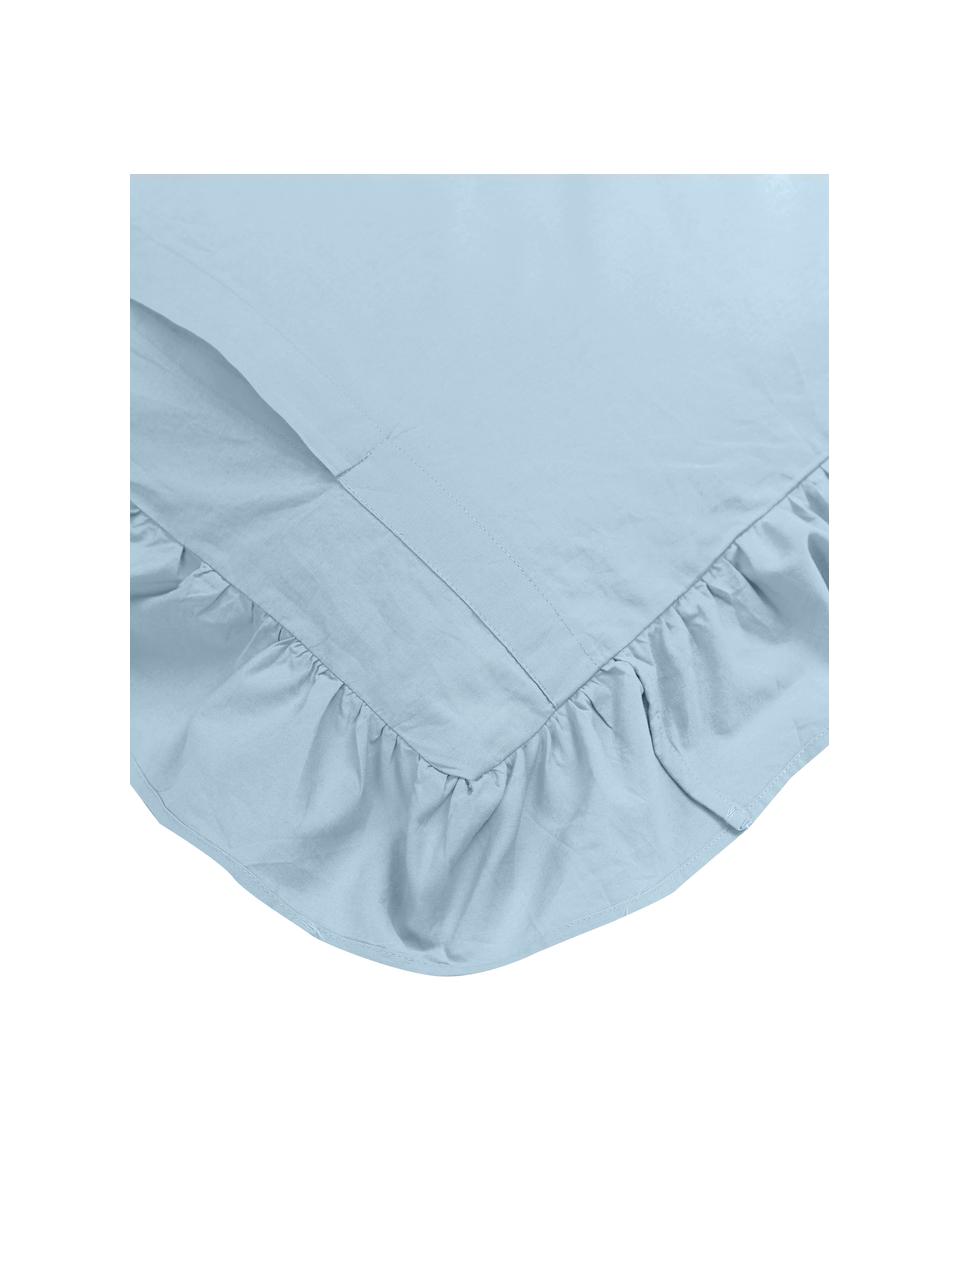 Taies d'oreiller en coton lavé bleu à volants Florence, 2 pièces, Bleu ciel, 65 x 65 cm